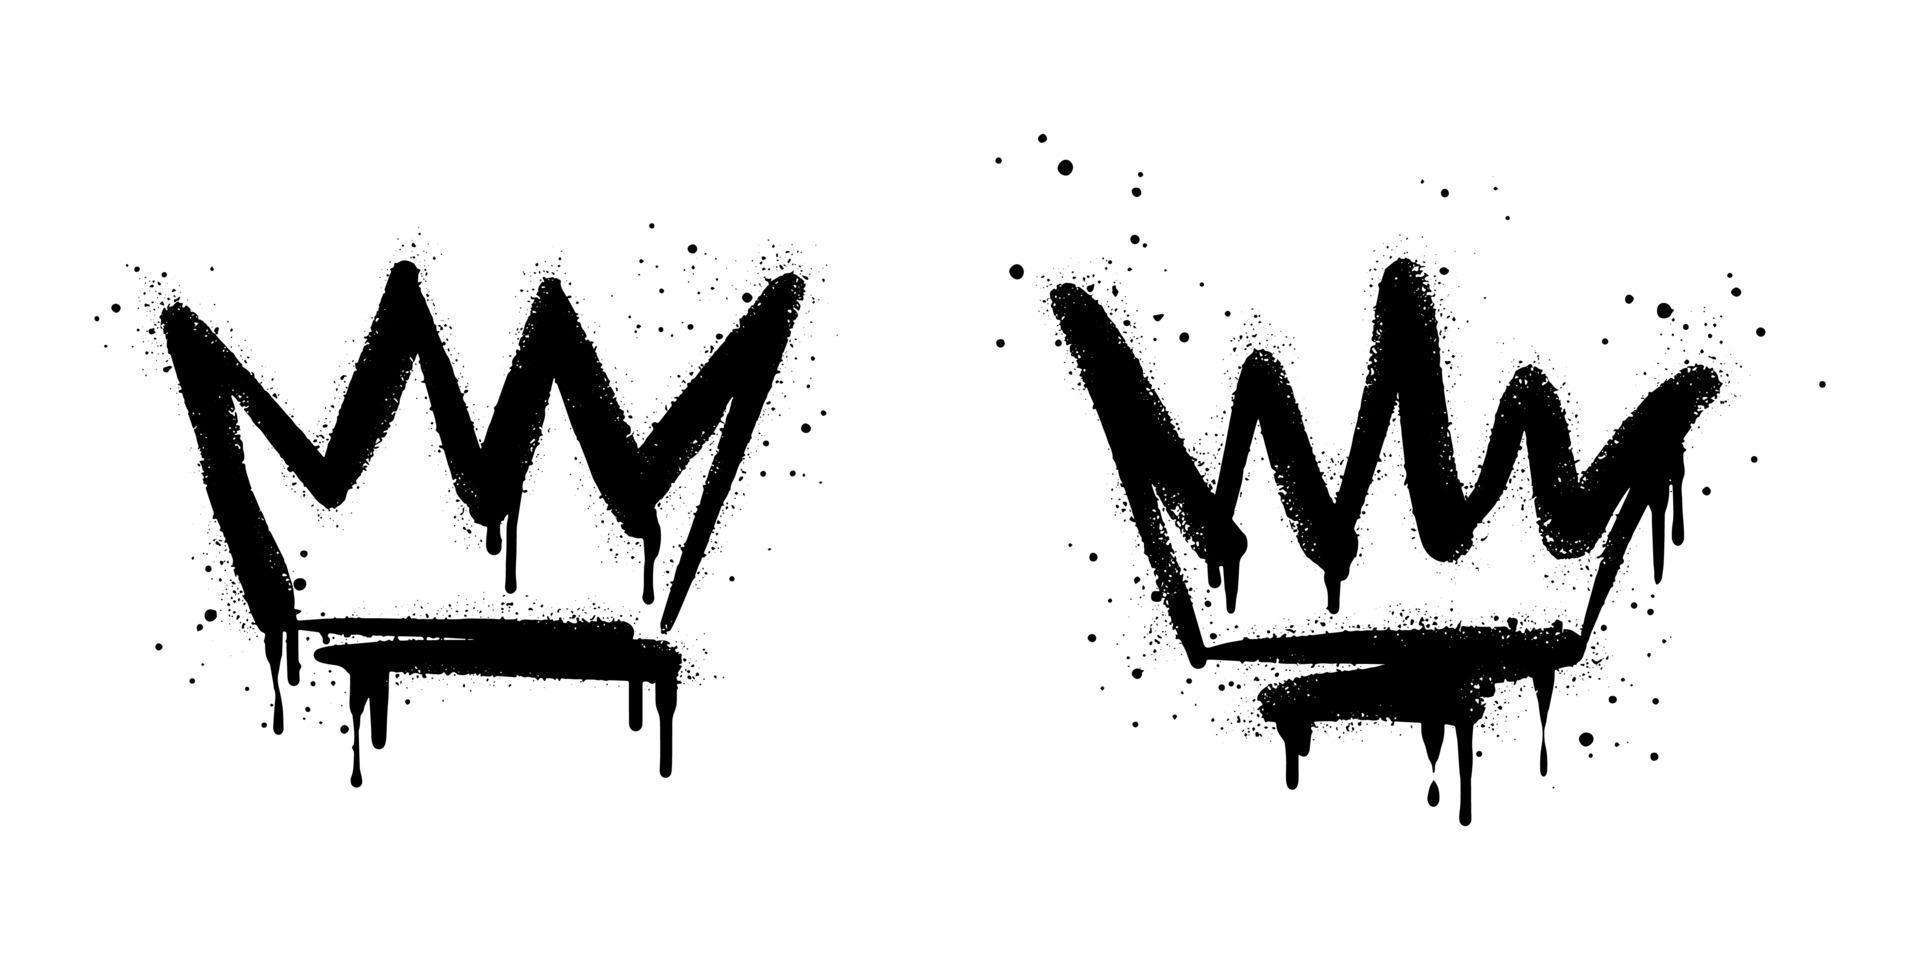 collection de graffitis peints à la bombe signe de couronne en noir sur blanc. symbole de goutte à goutte de la couronne. isolé sur fond blanc. illustration vectorielle vecteur